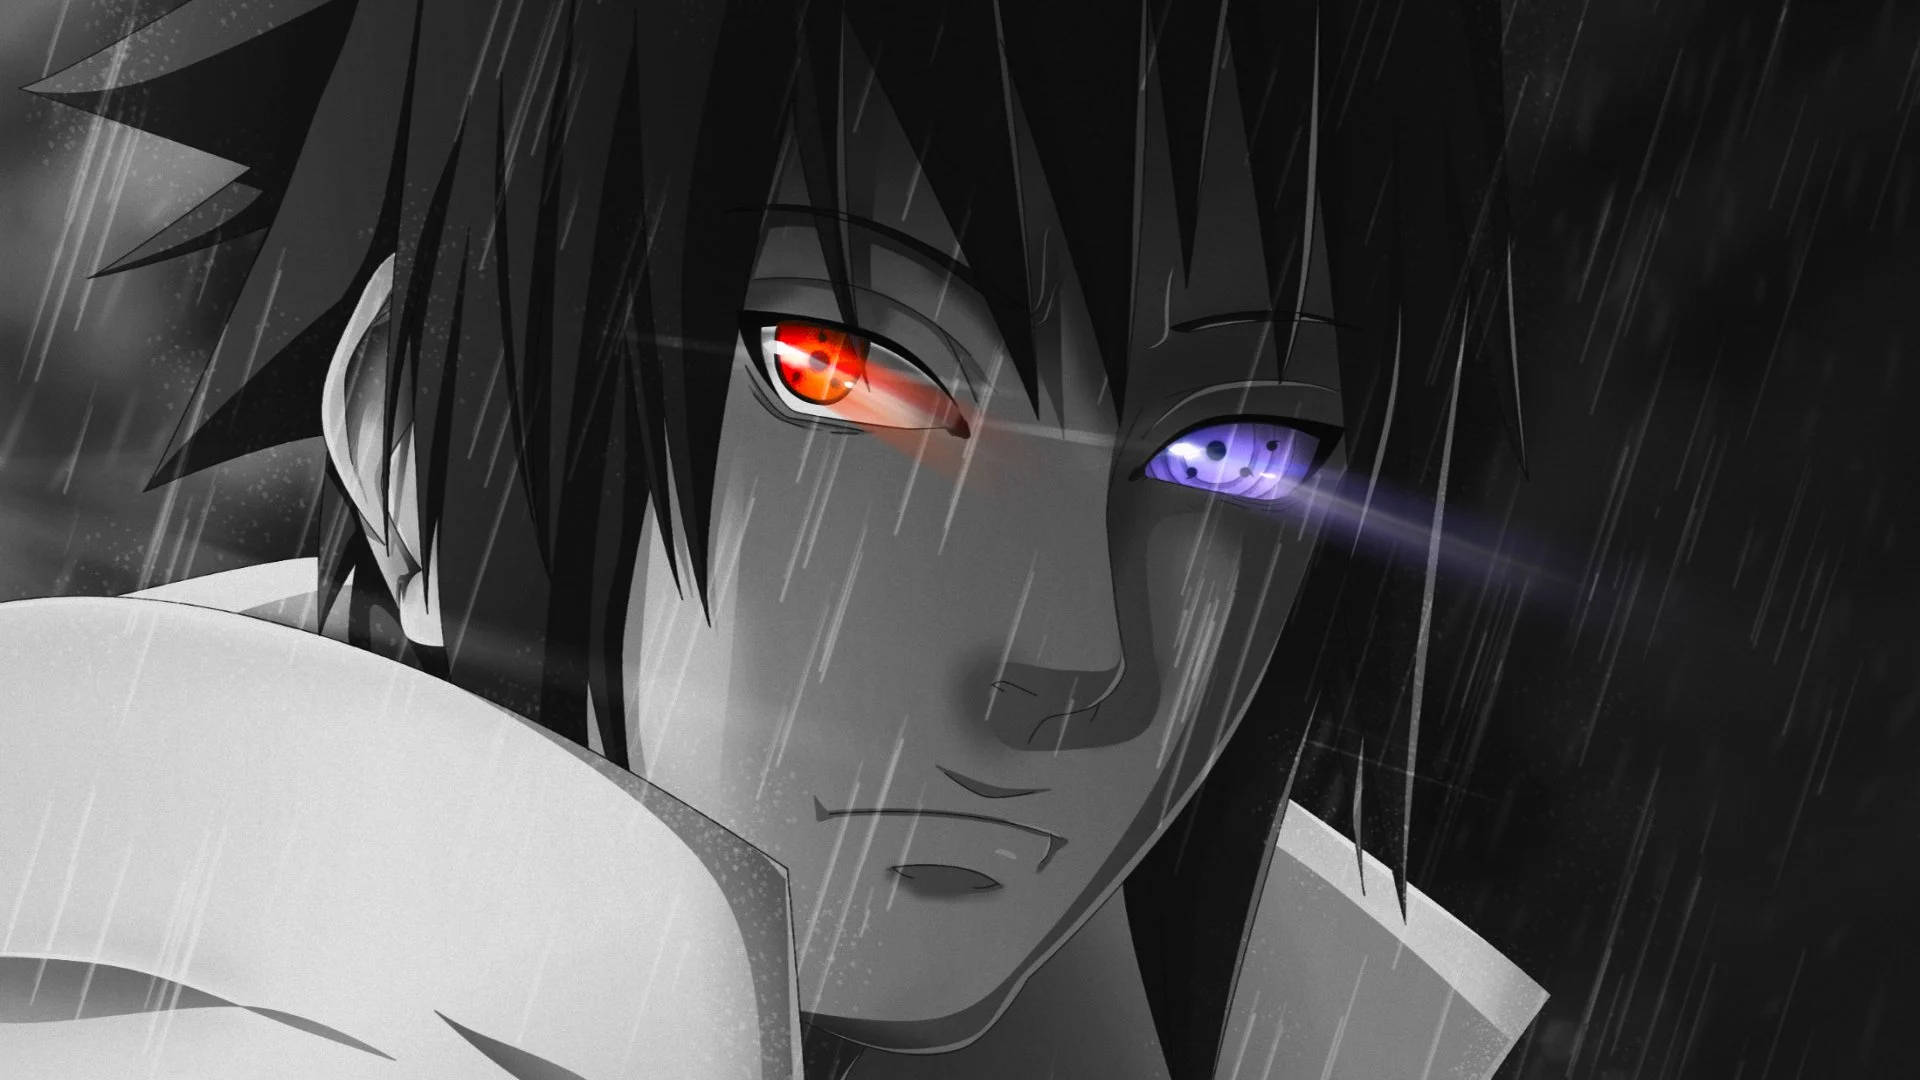 Ojosde Sasuke De Anime Increíbles. Fondo de pantalla